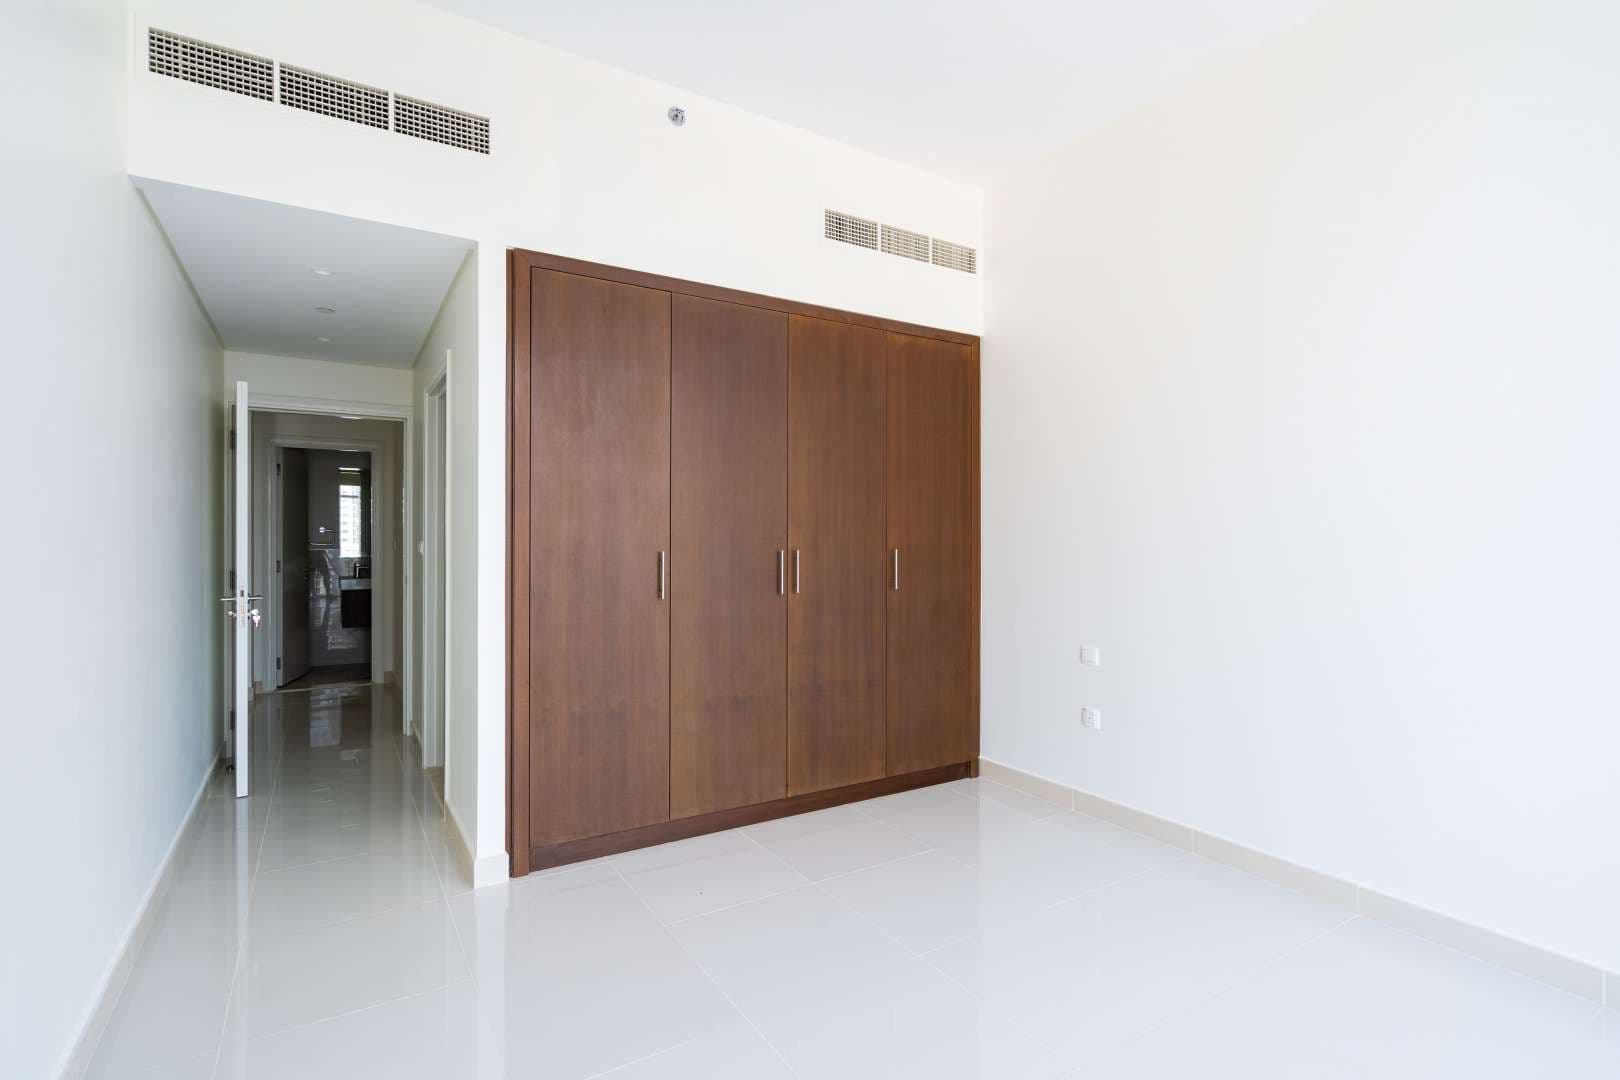 2 Bedroom Apartment For Rent Boulevard Crescent Lp05081 94dfe11c01d0380.jpg